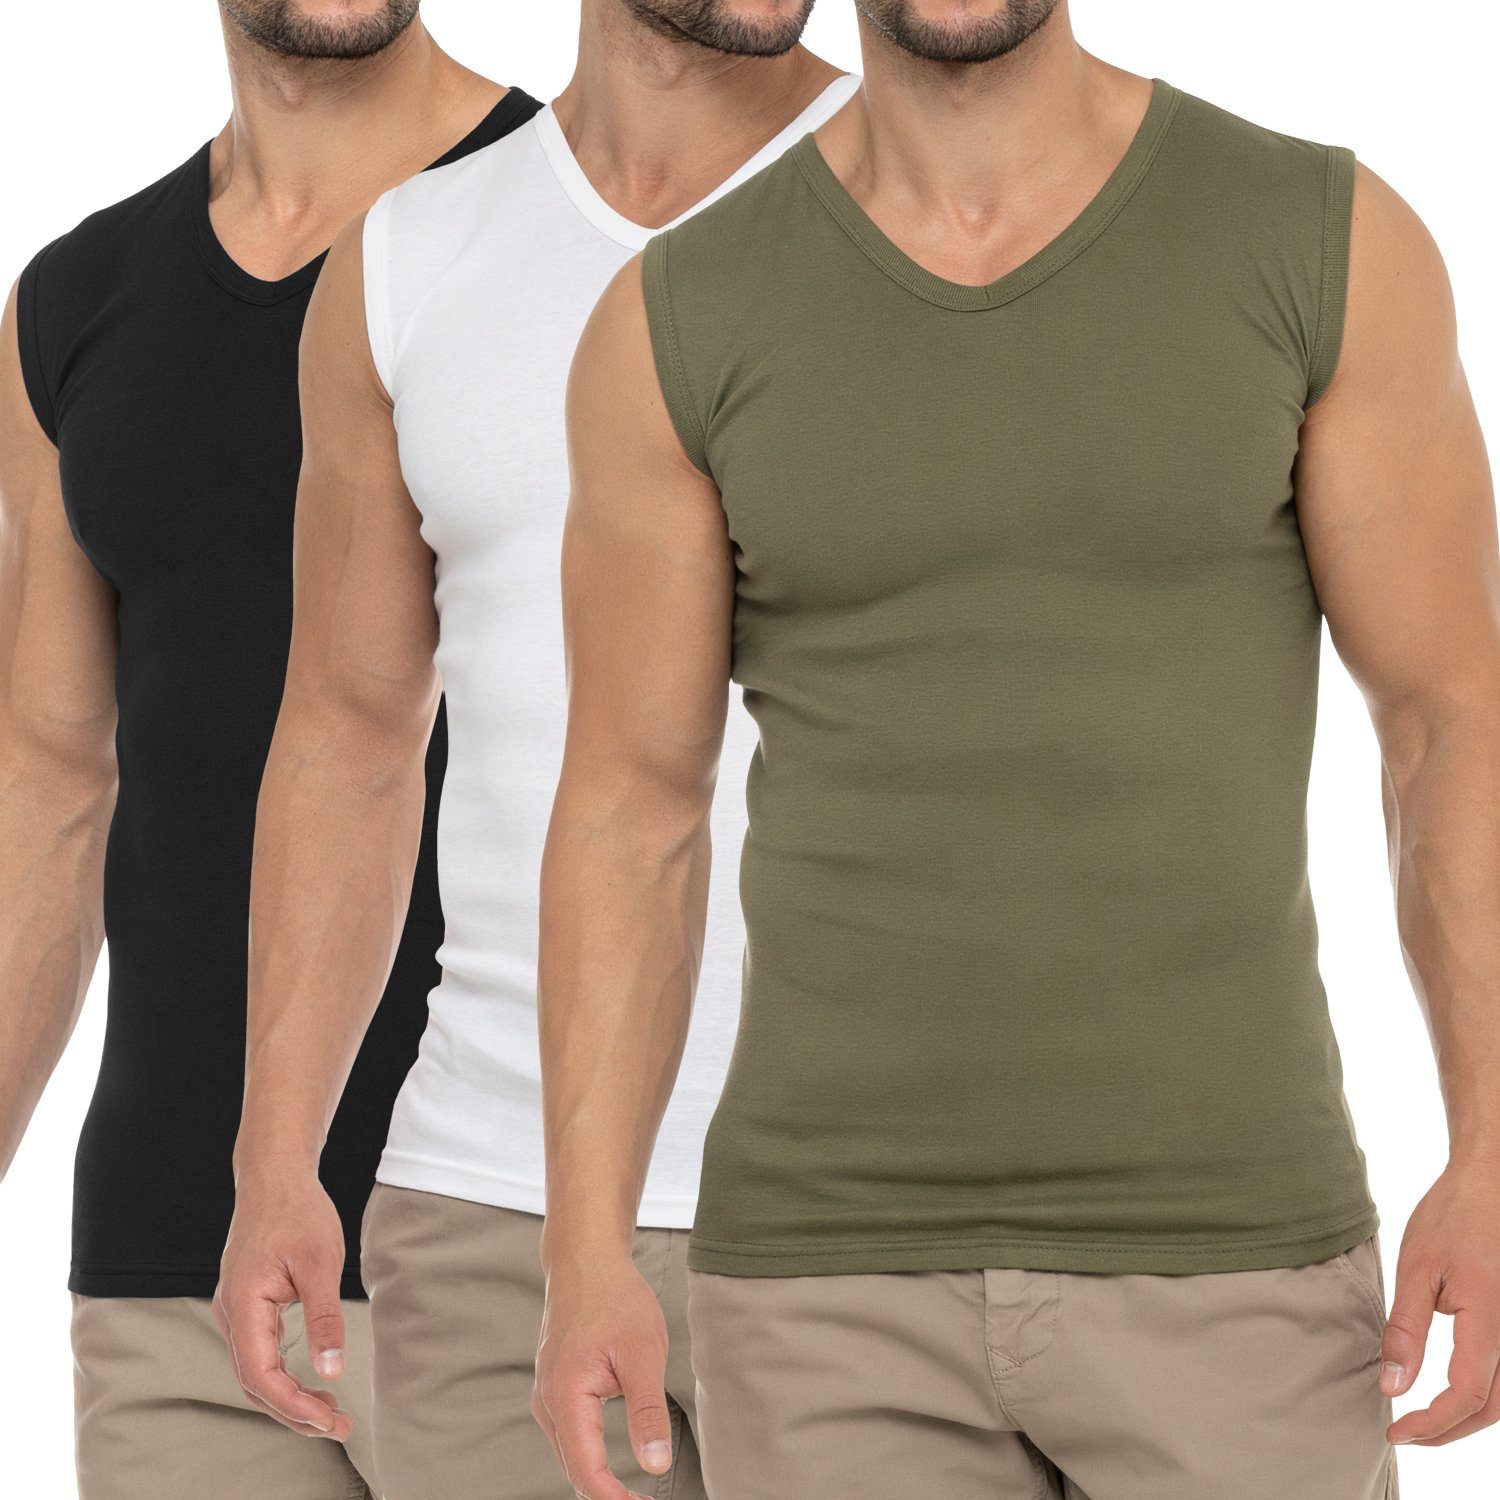 Pack) Shirt celodoro Schwarz / Business Muscle Olive Herren Weiss V-Neck (3er Muskelshirt Unterhemd /